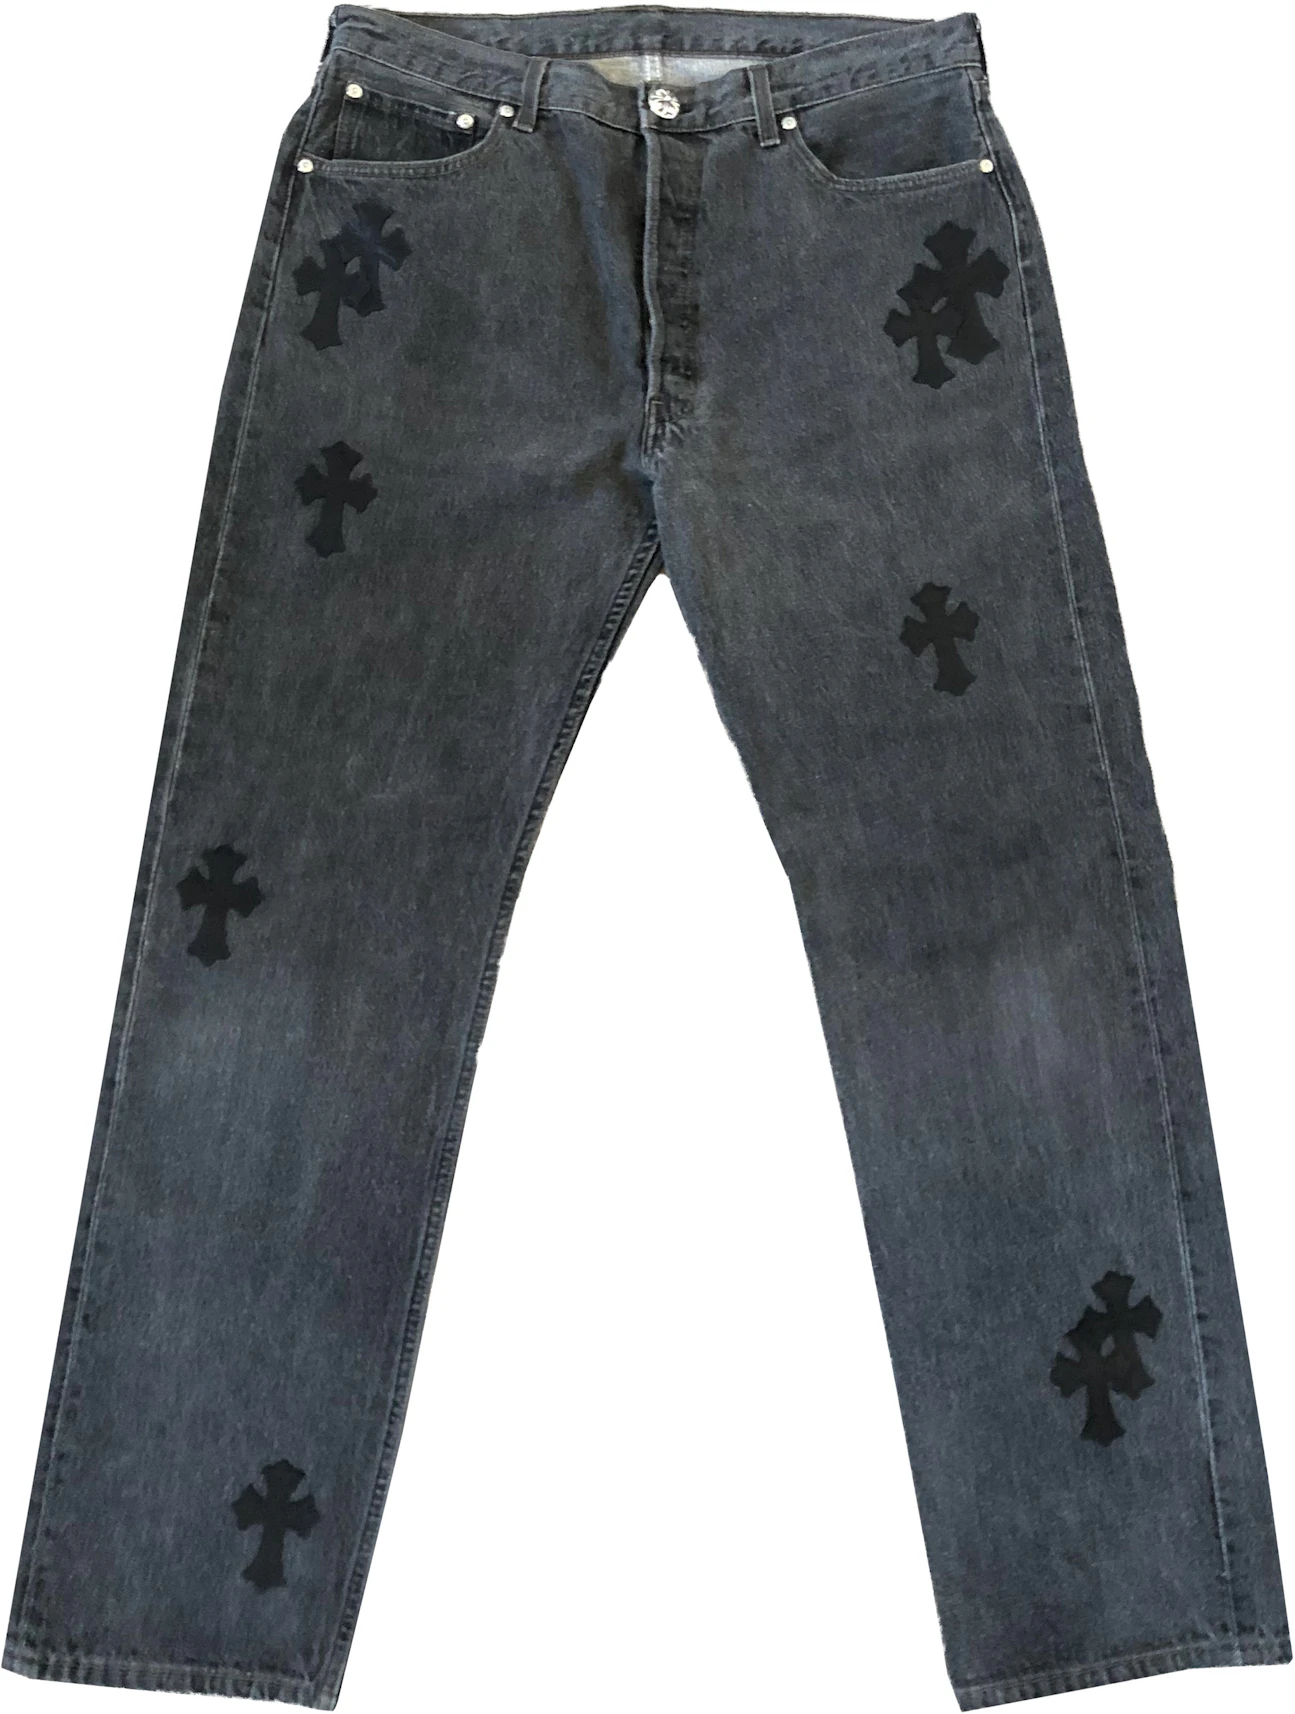 Chrome Hearts Vintage Levi's Jeans Black - US